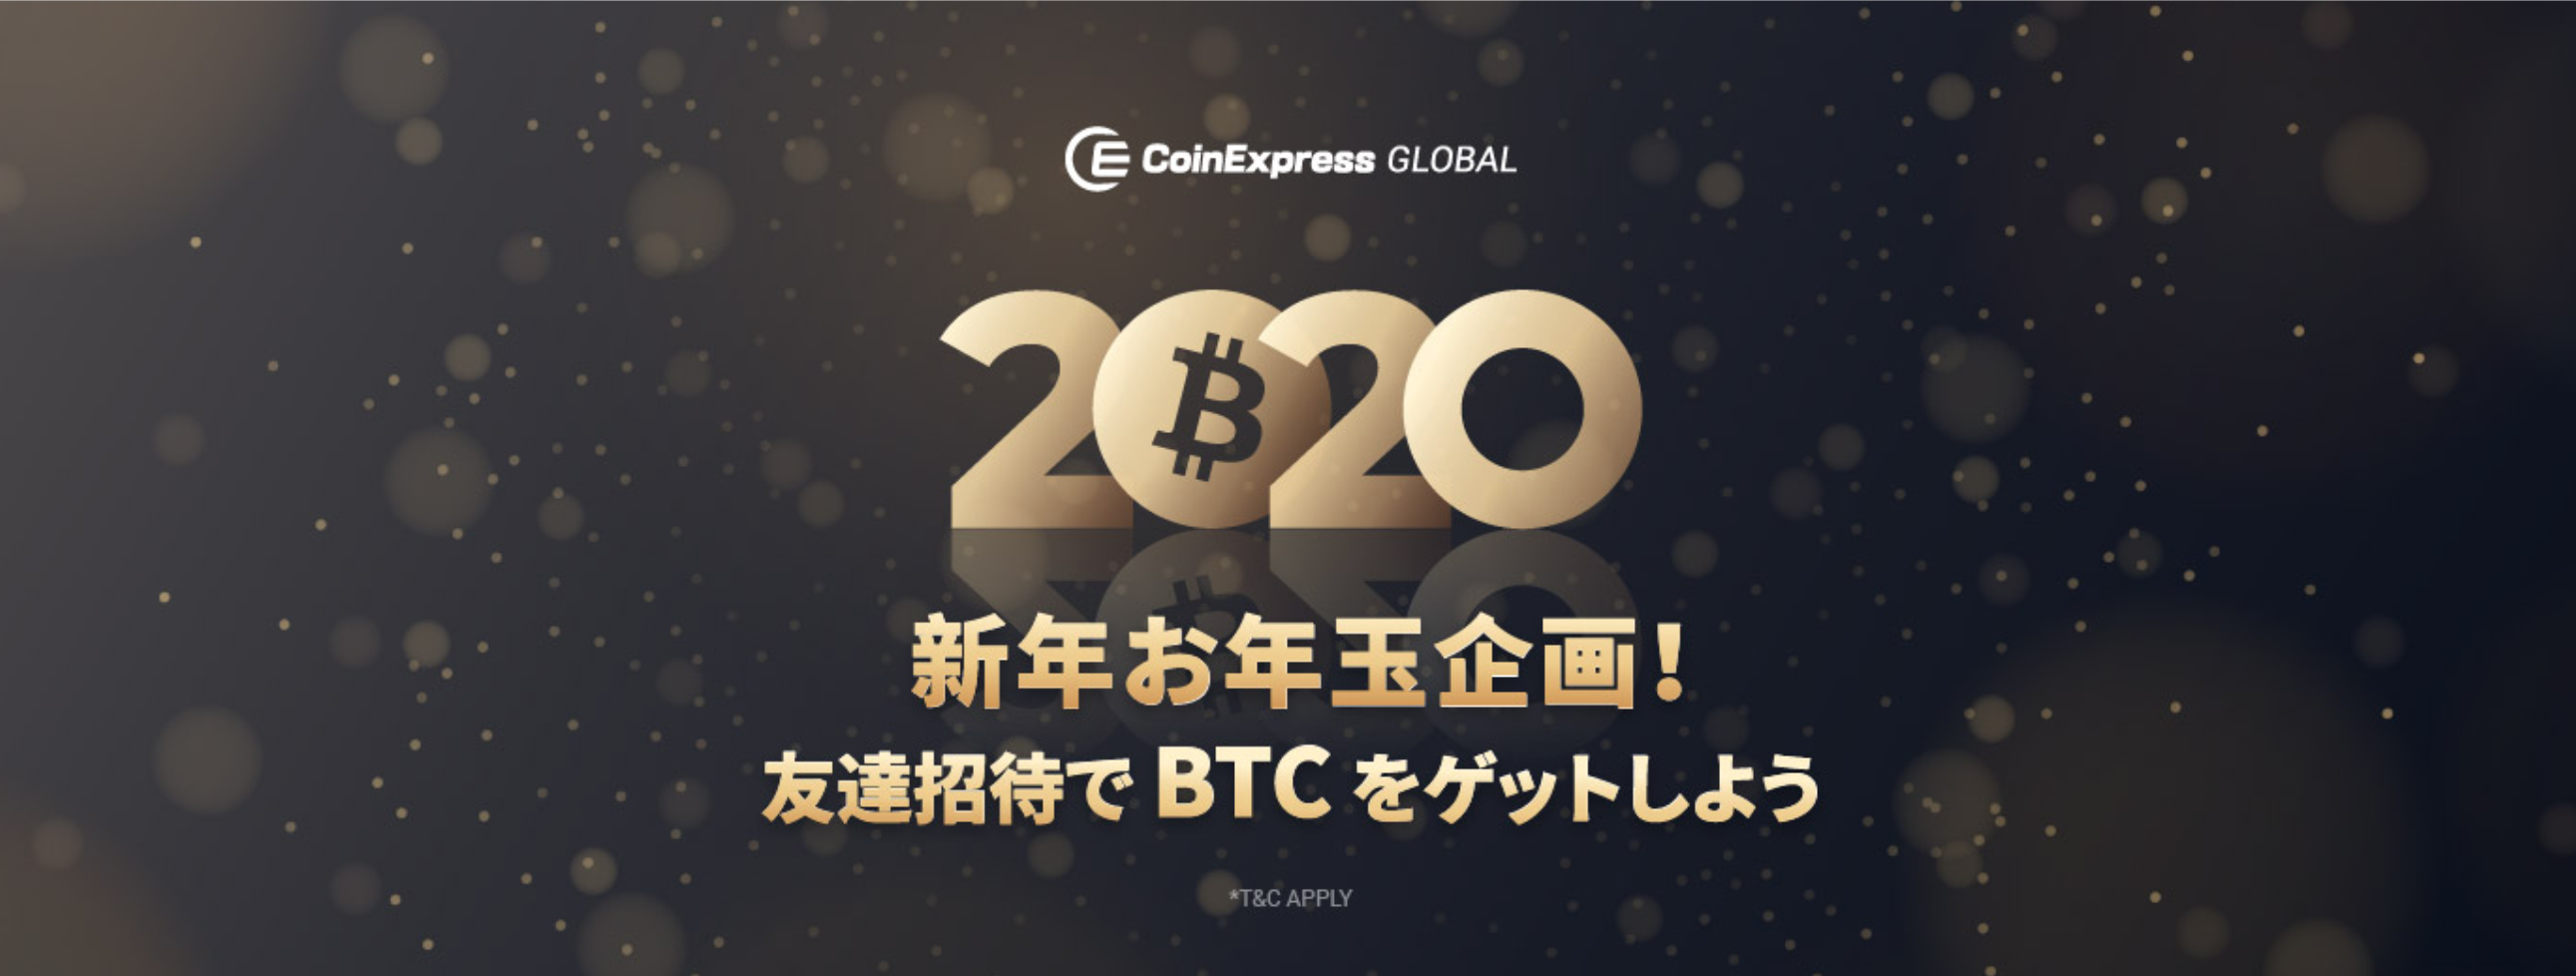 暗号通貨取引所 Coin Express が新年お年玉企画を開催